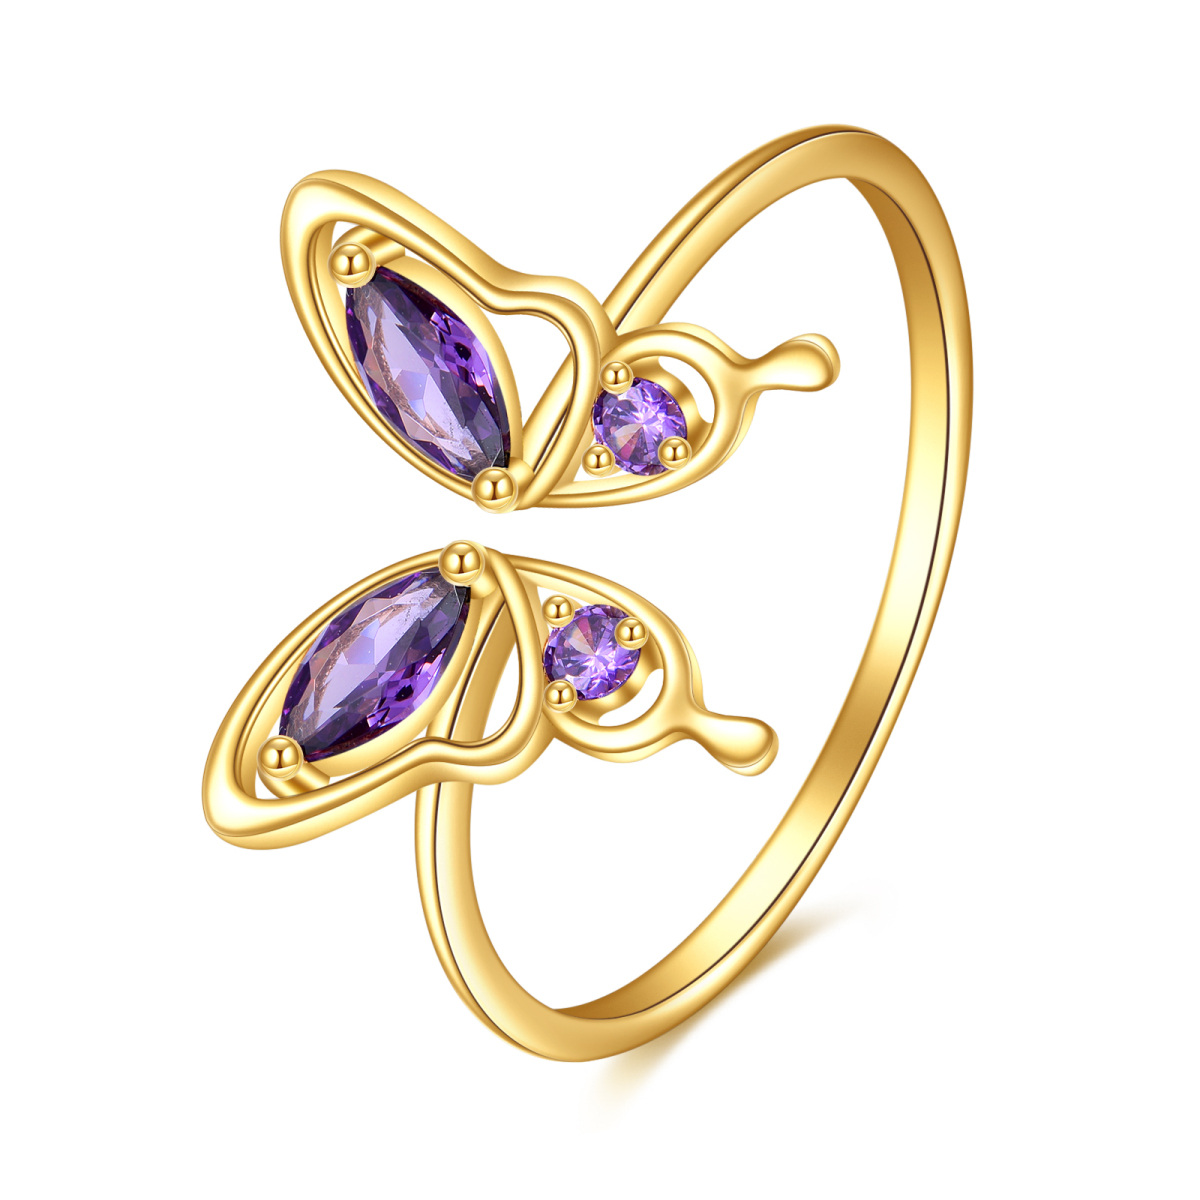 Offener Ring aus 14 Karat Gold mit Marquise-Kristall und Schmetterling-1